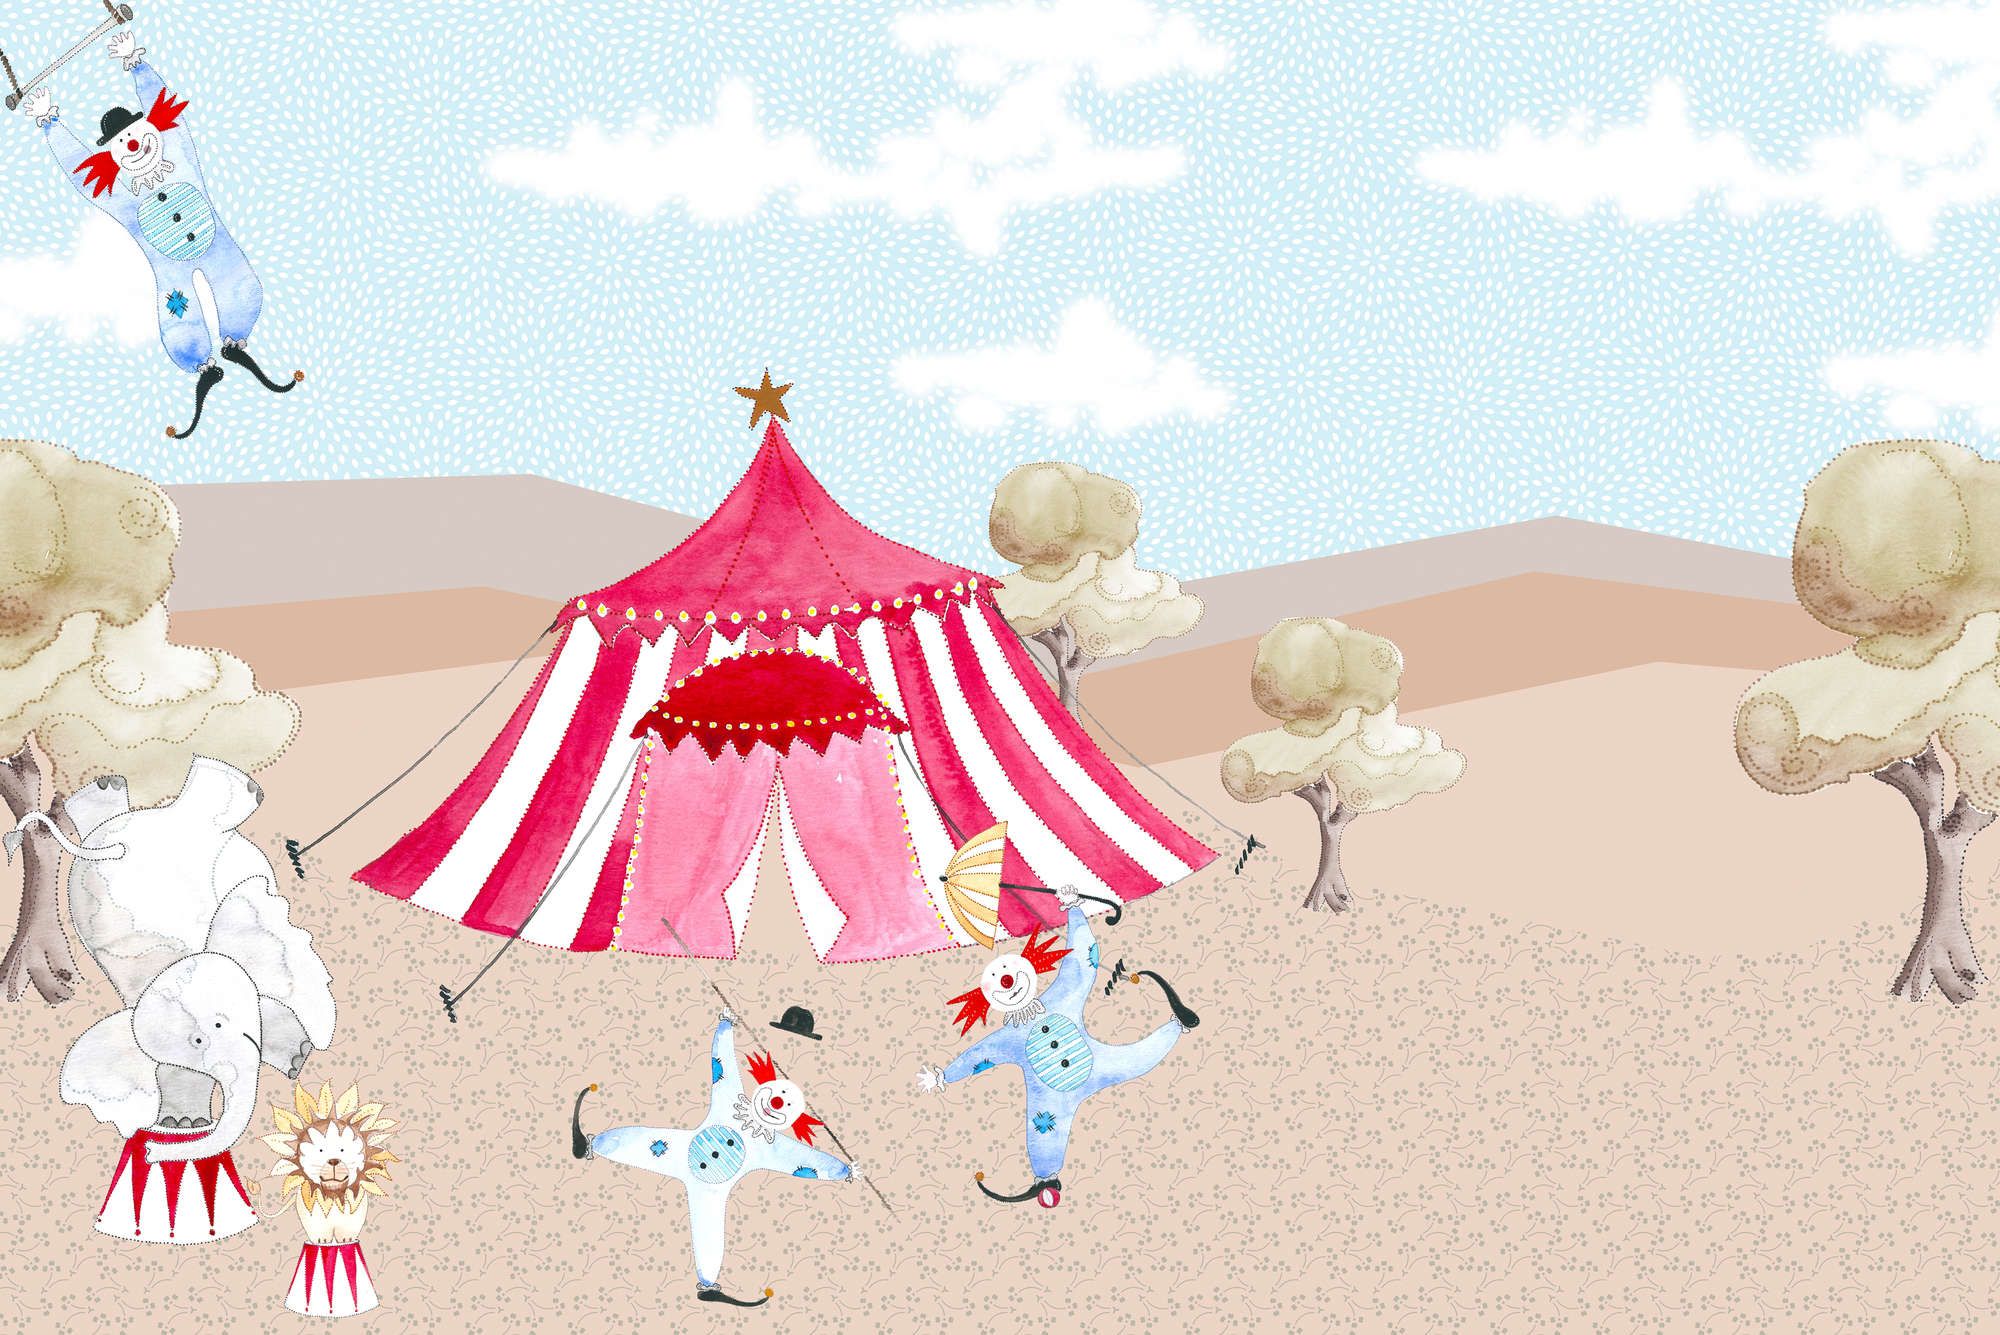             Papier peint panoramique enfants dessin chapiteau de cirque avec artistes sur intissé lisse mat
        